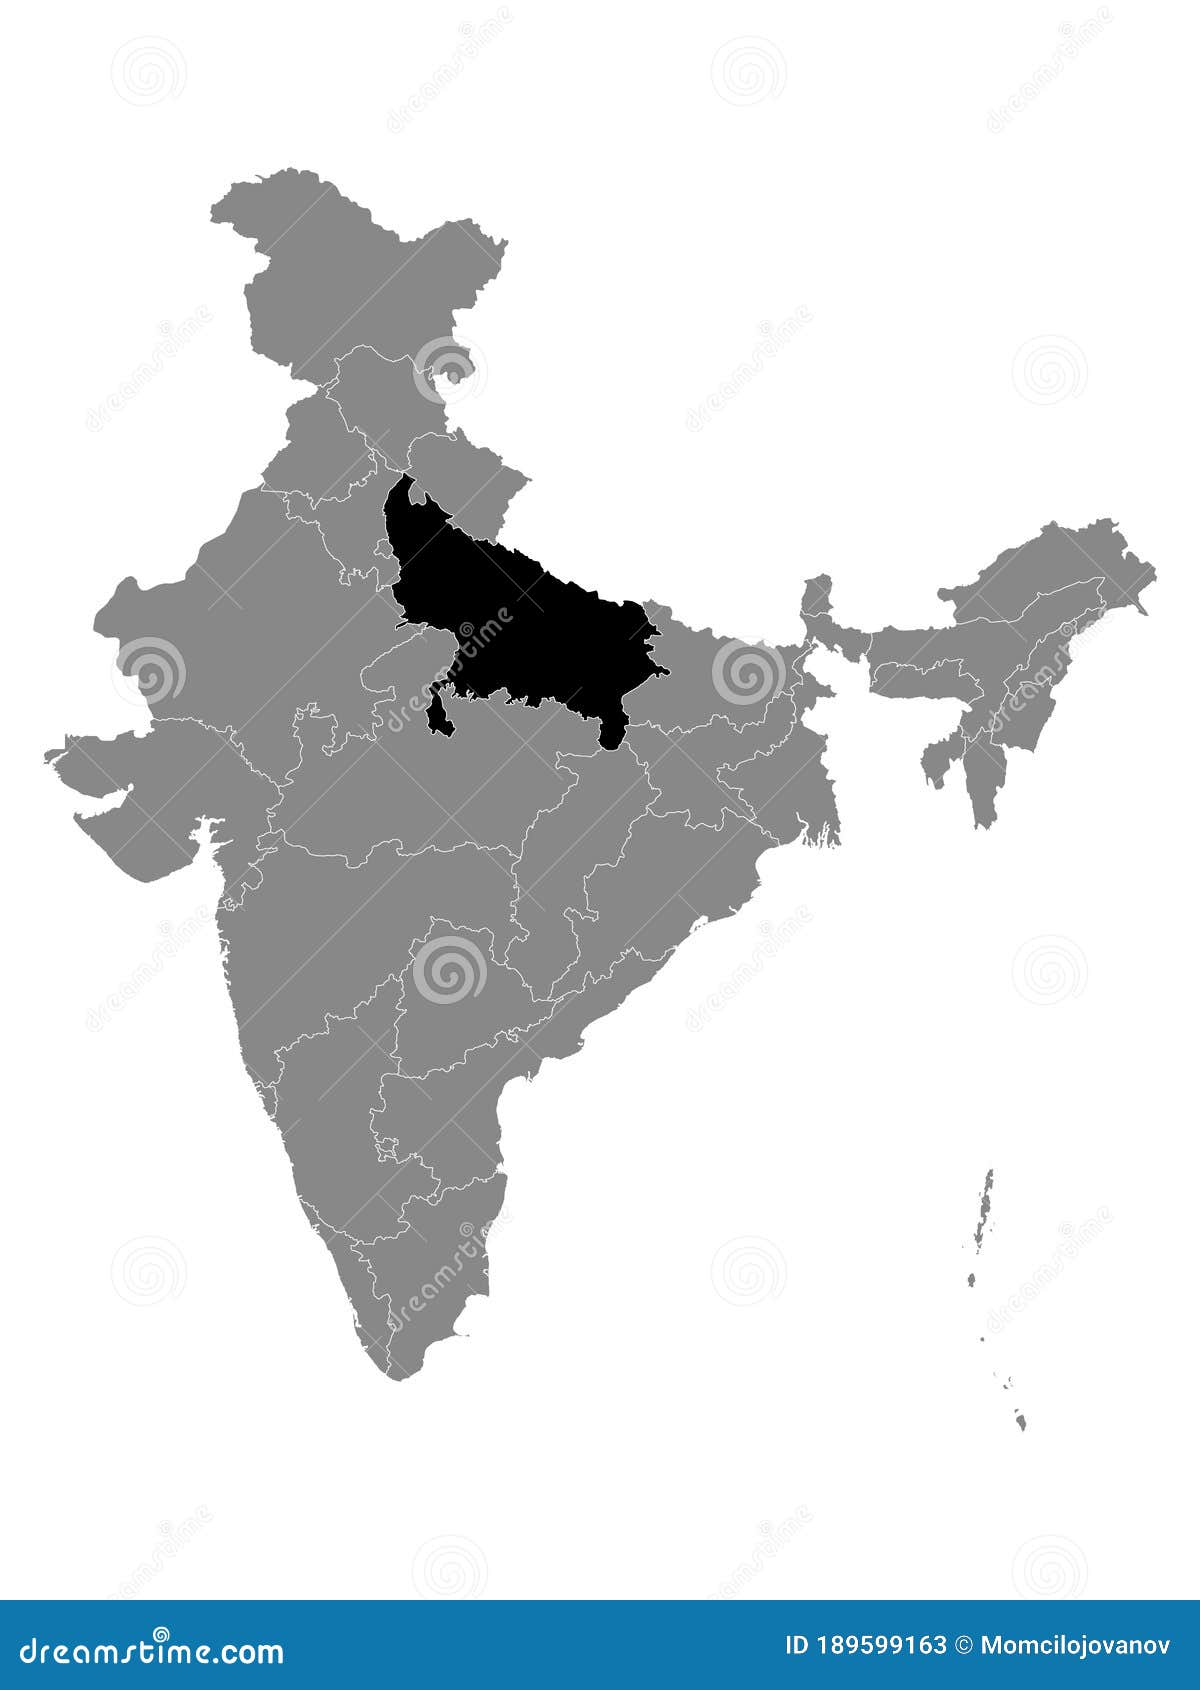 Location Map of Uttar Pradesh State Stock Vector - Illustration of ...